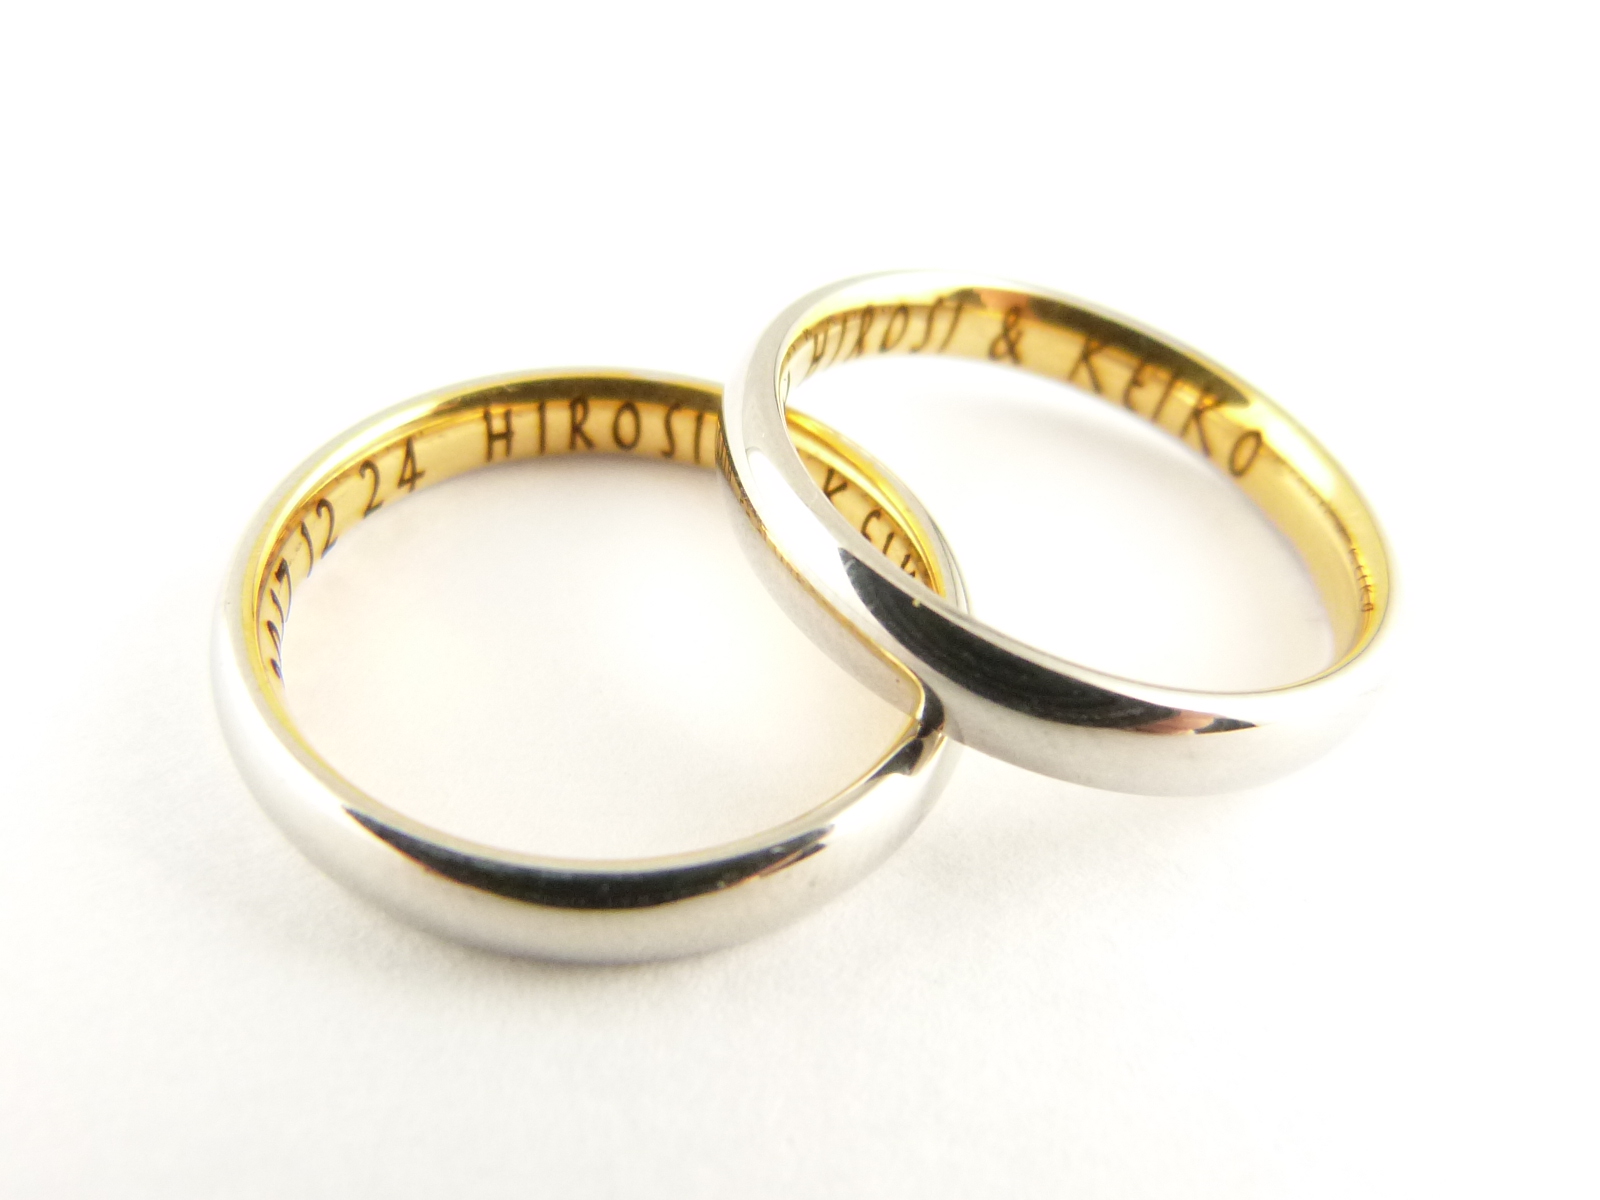 リング紙箱1個無料 ネーム刻印無料 内側が金色 商品追加値下げ在庫復活 月のうさぎ ペアリング ラッピング無料 316Lステンレス 2本 結婚指輪